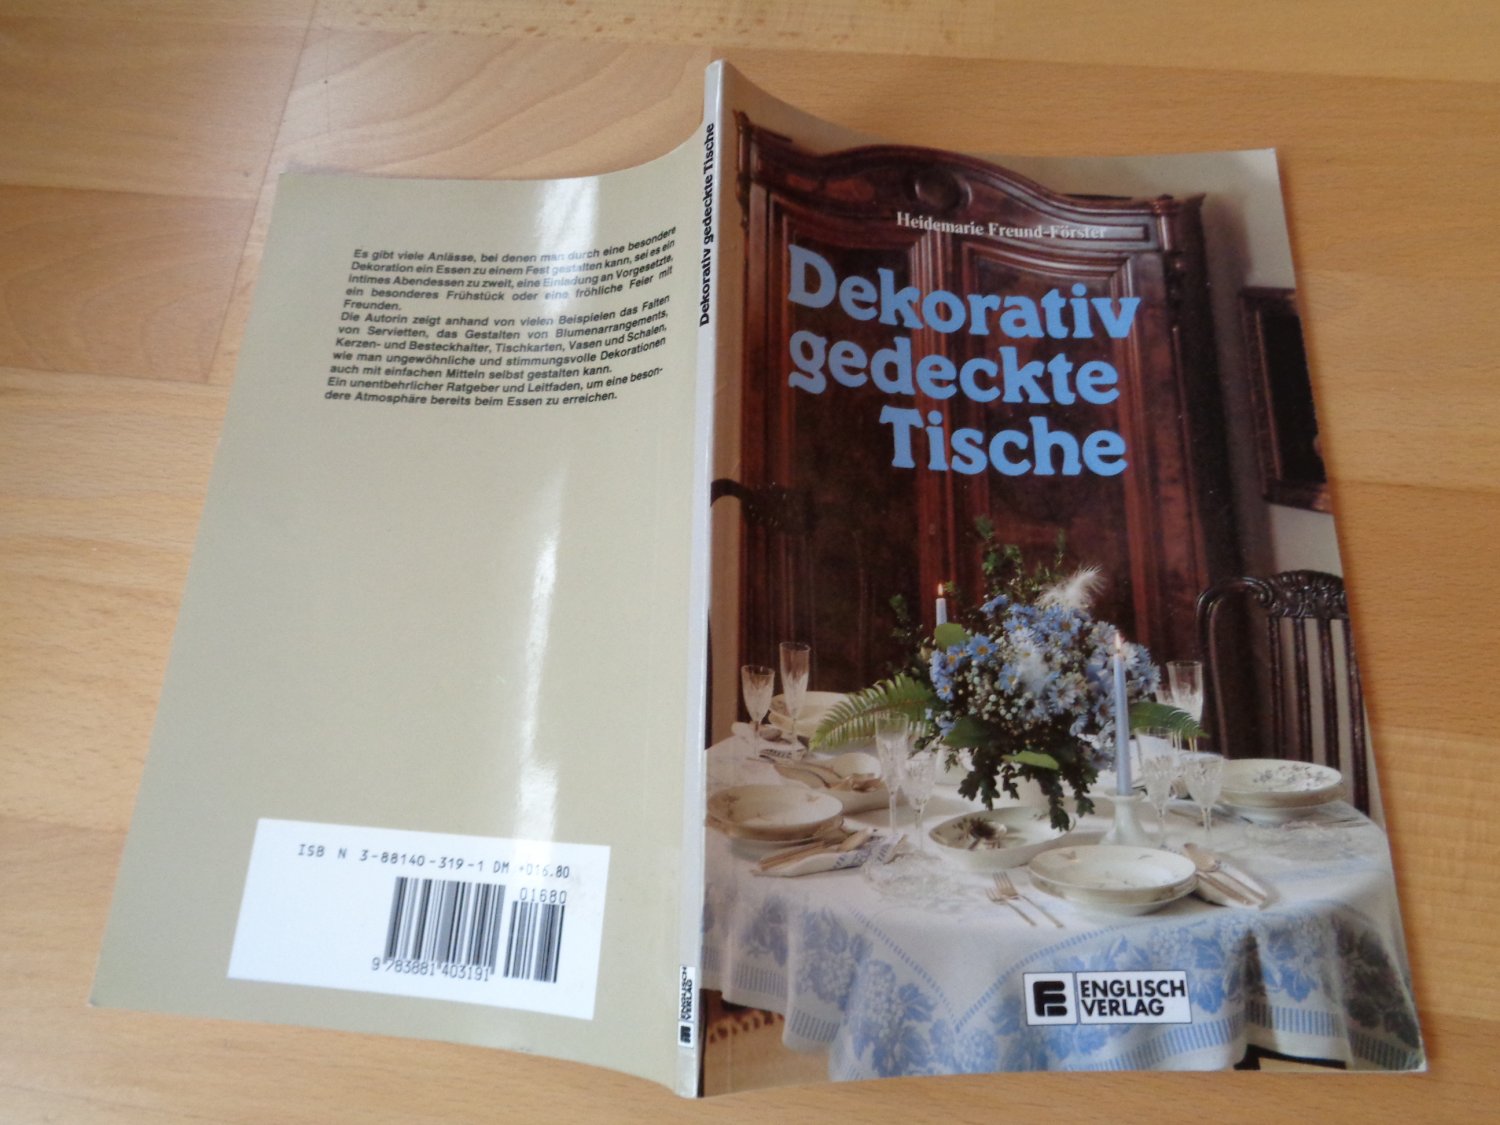 Dekorativ Gedeckte Tische Ll Heidemarie Freund Forster Buch Gebraucht Kaufen A02ob1zm01zzc